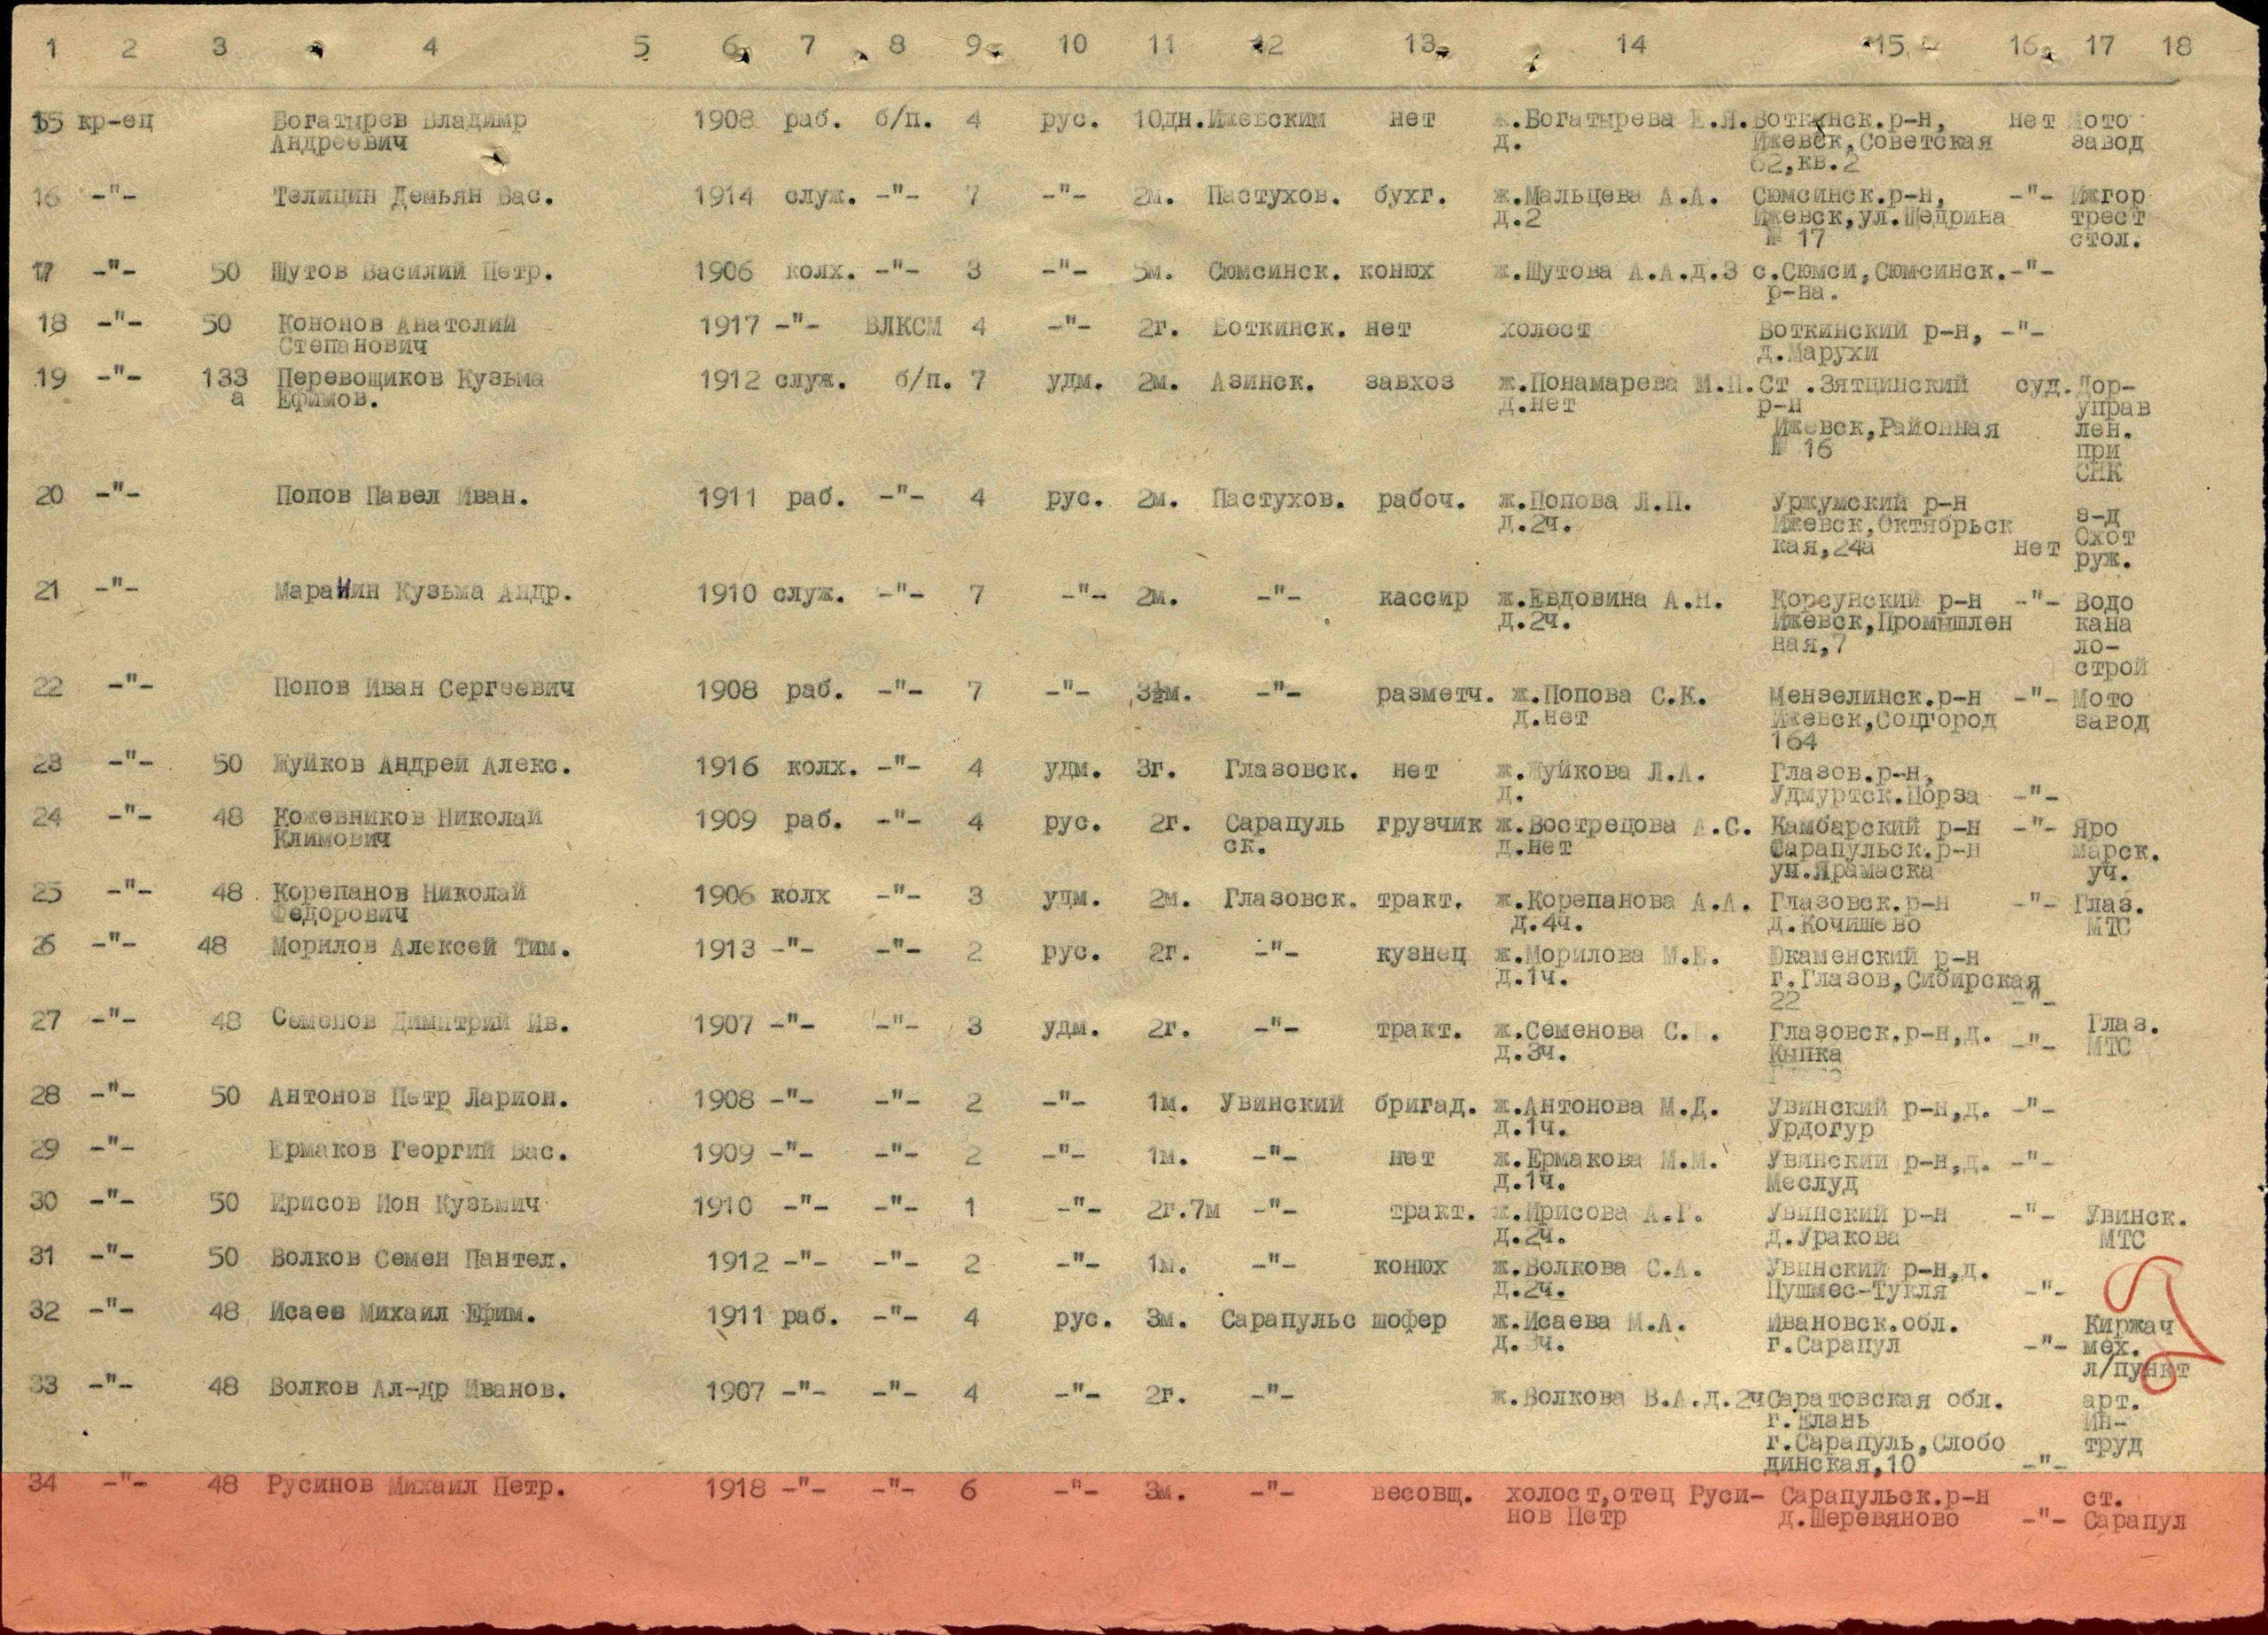 Информация из ВПП. Лист из списка маршевого батальона 23-го запасного стрелкового полка